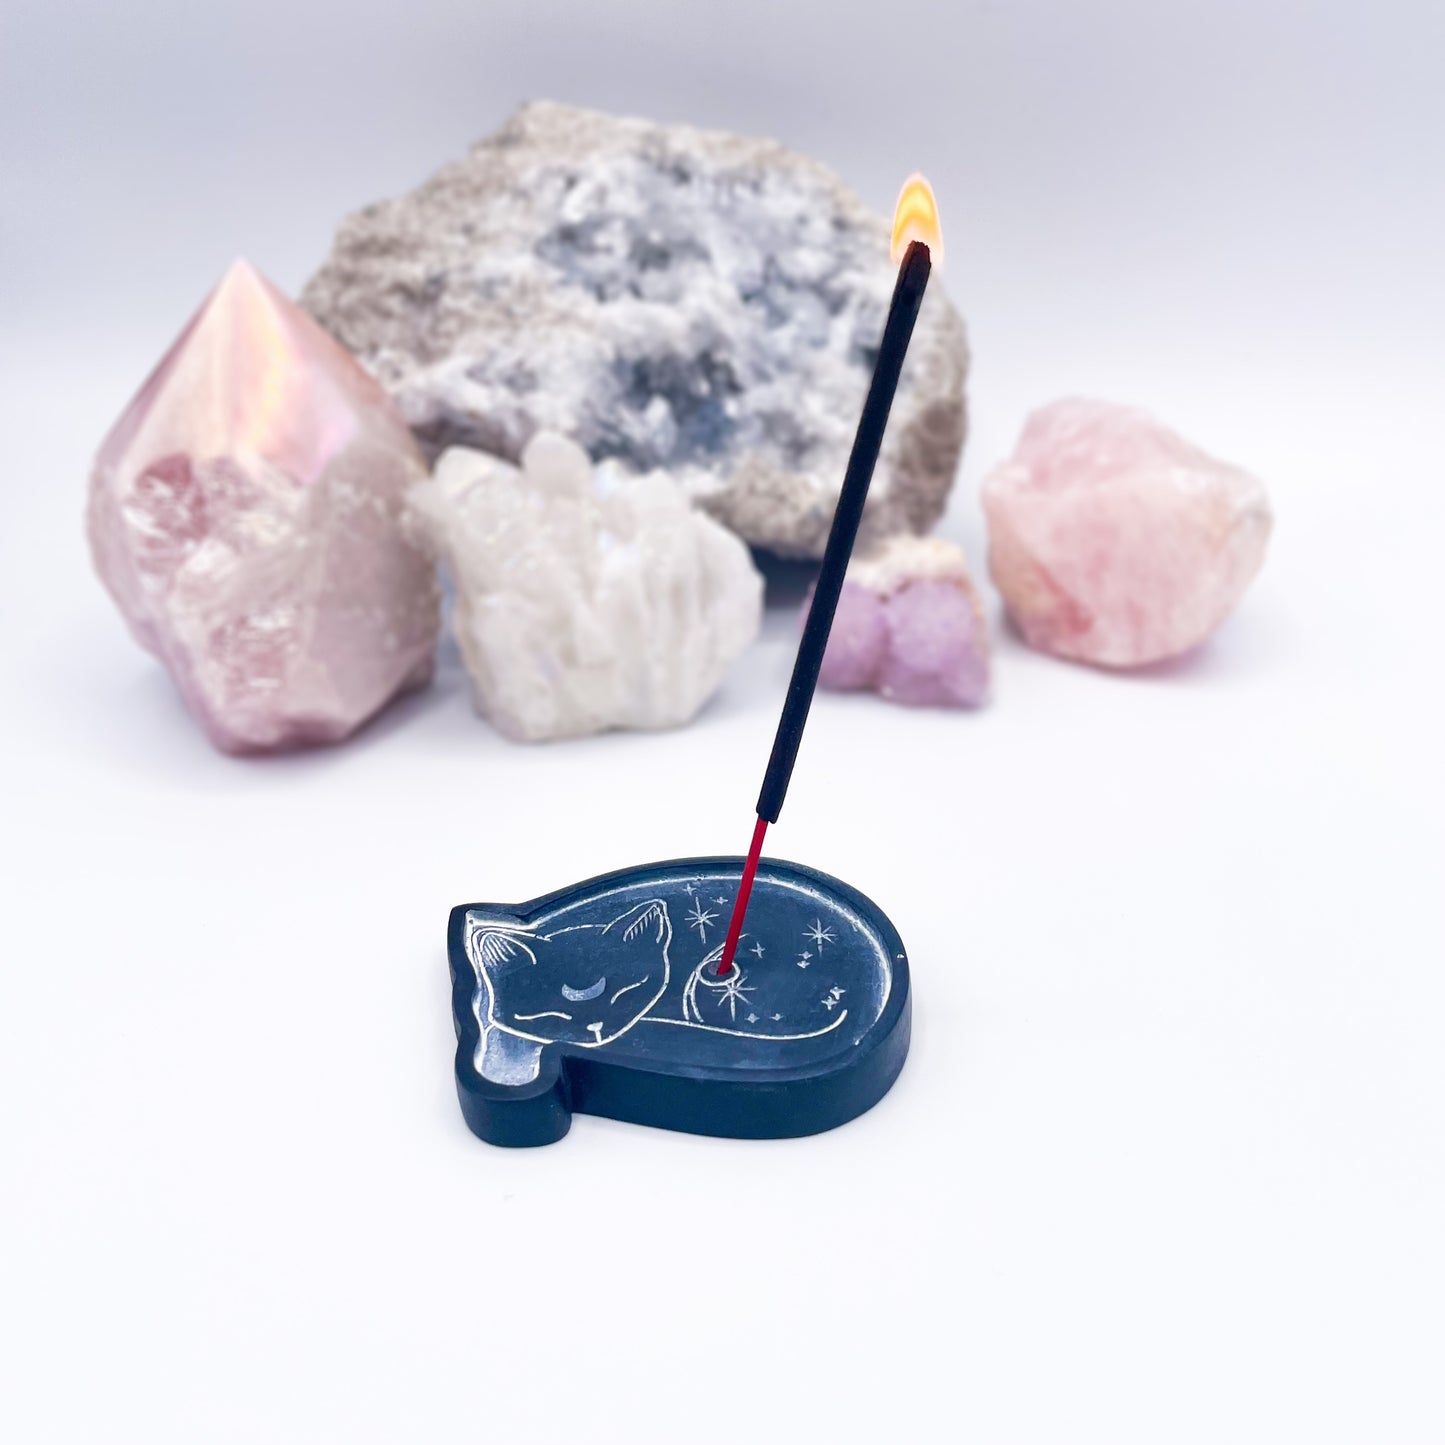 Black cat incense holder